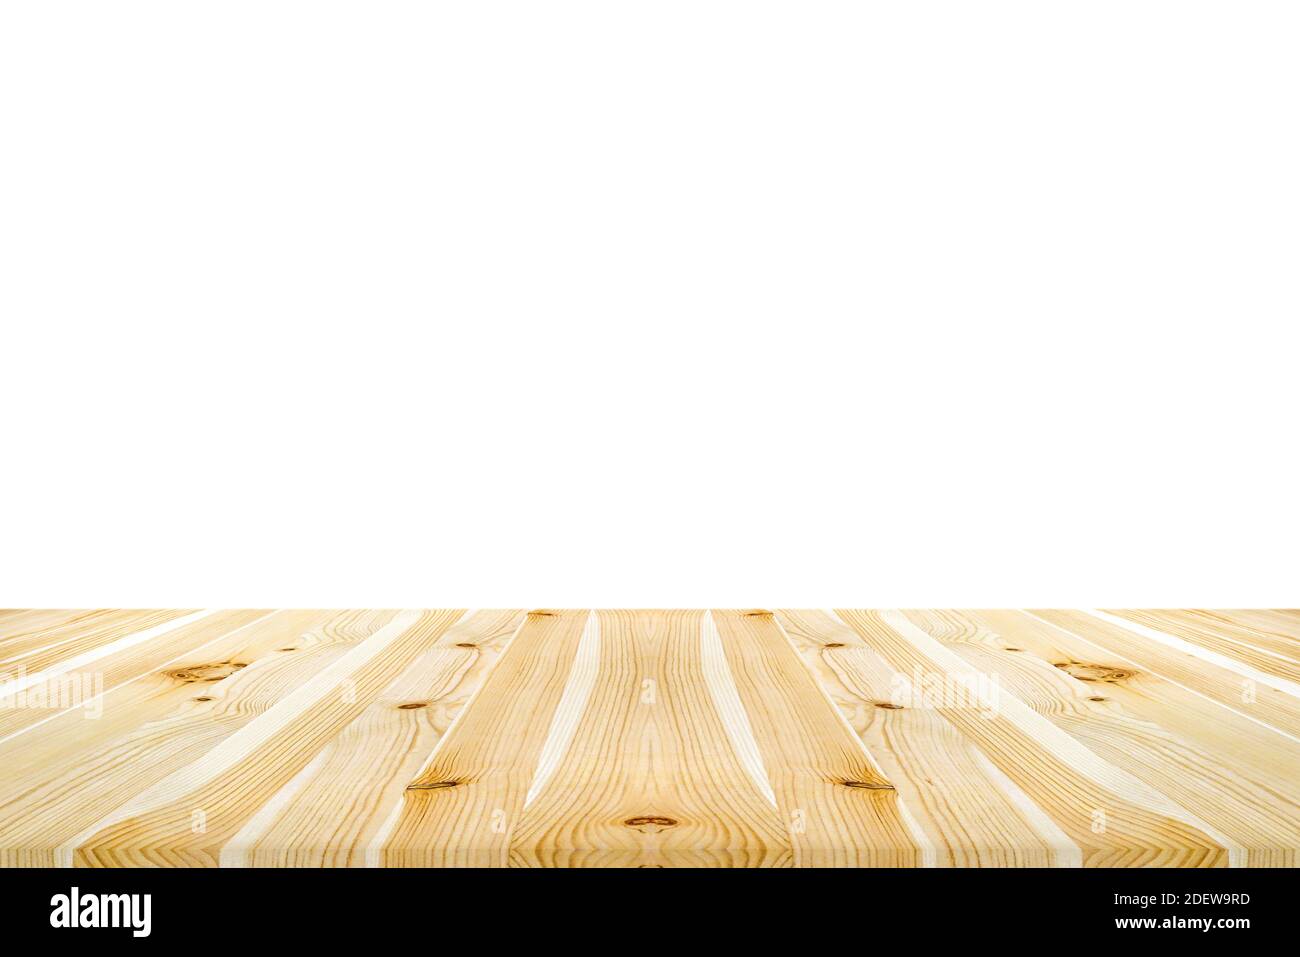 Svuotare il piano del tavolo o il contatore in legno chiaro pulito nuovo su sfondo bianco - può essere utilizzato per la visualizzazione di montage i vostri prodotti (cibo) Foto Stock